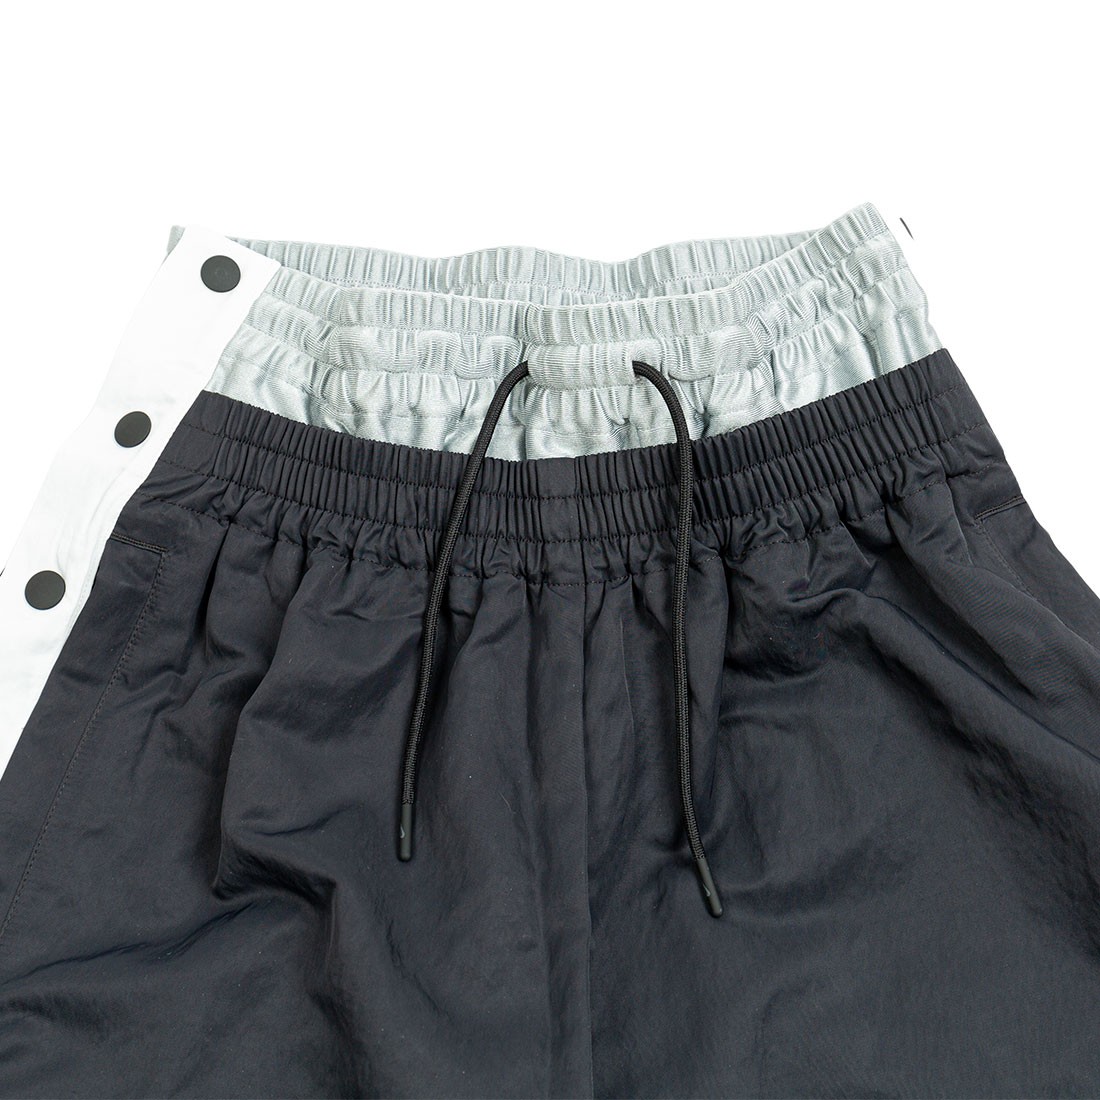 Nike x Ambush Women's Tearaway Pants in Black, Size: Small | DB8589-010